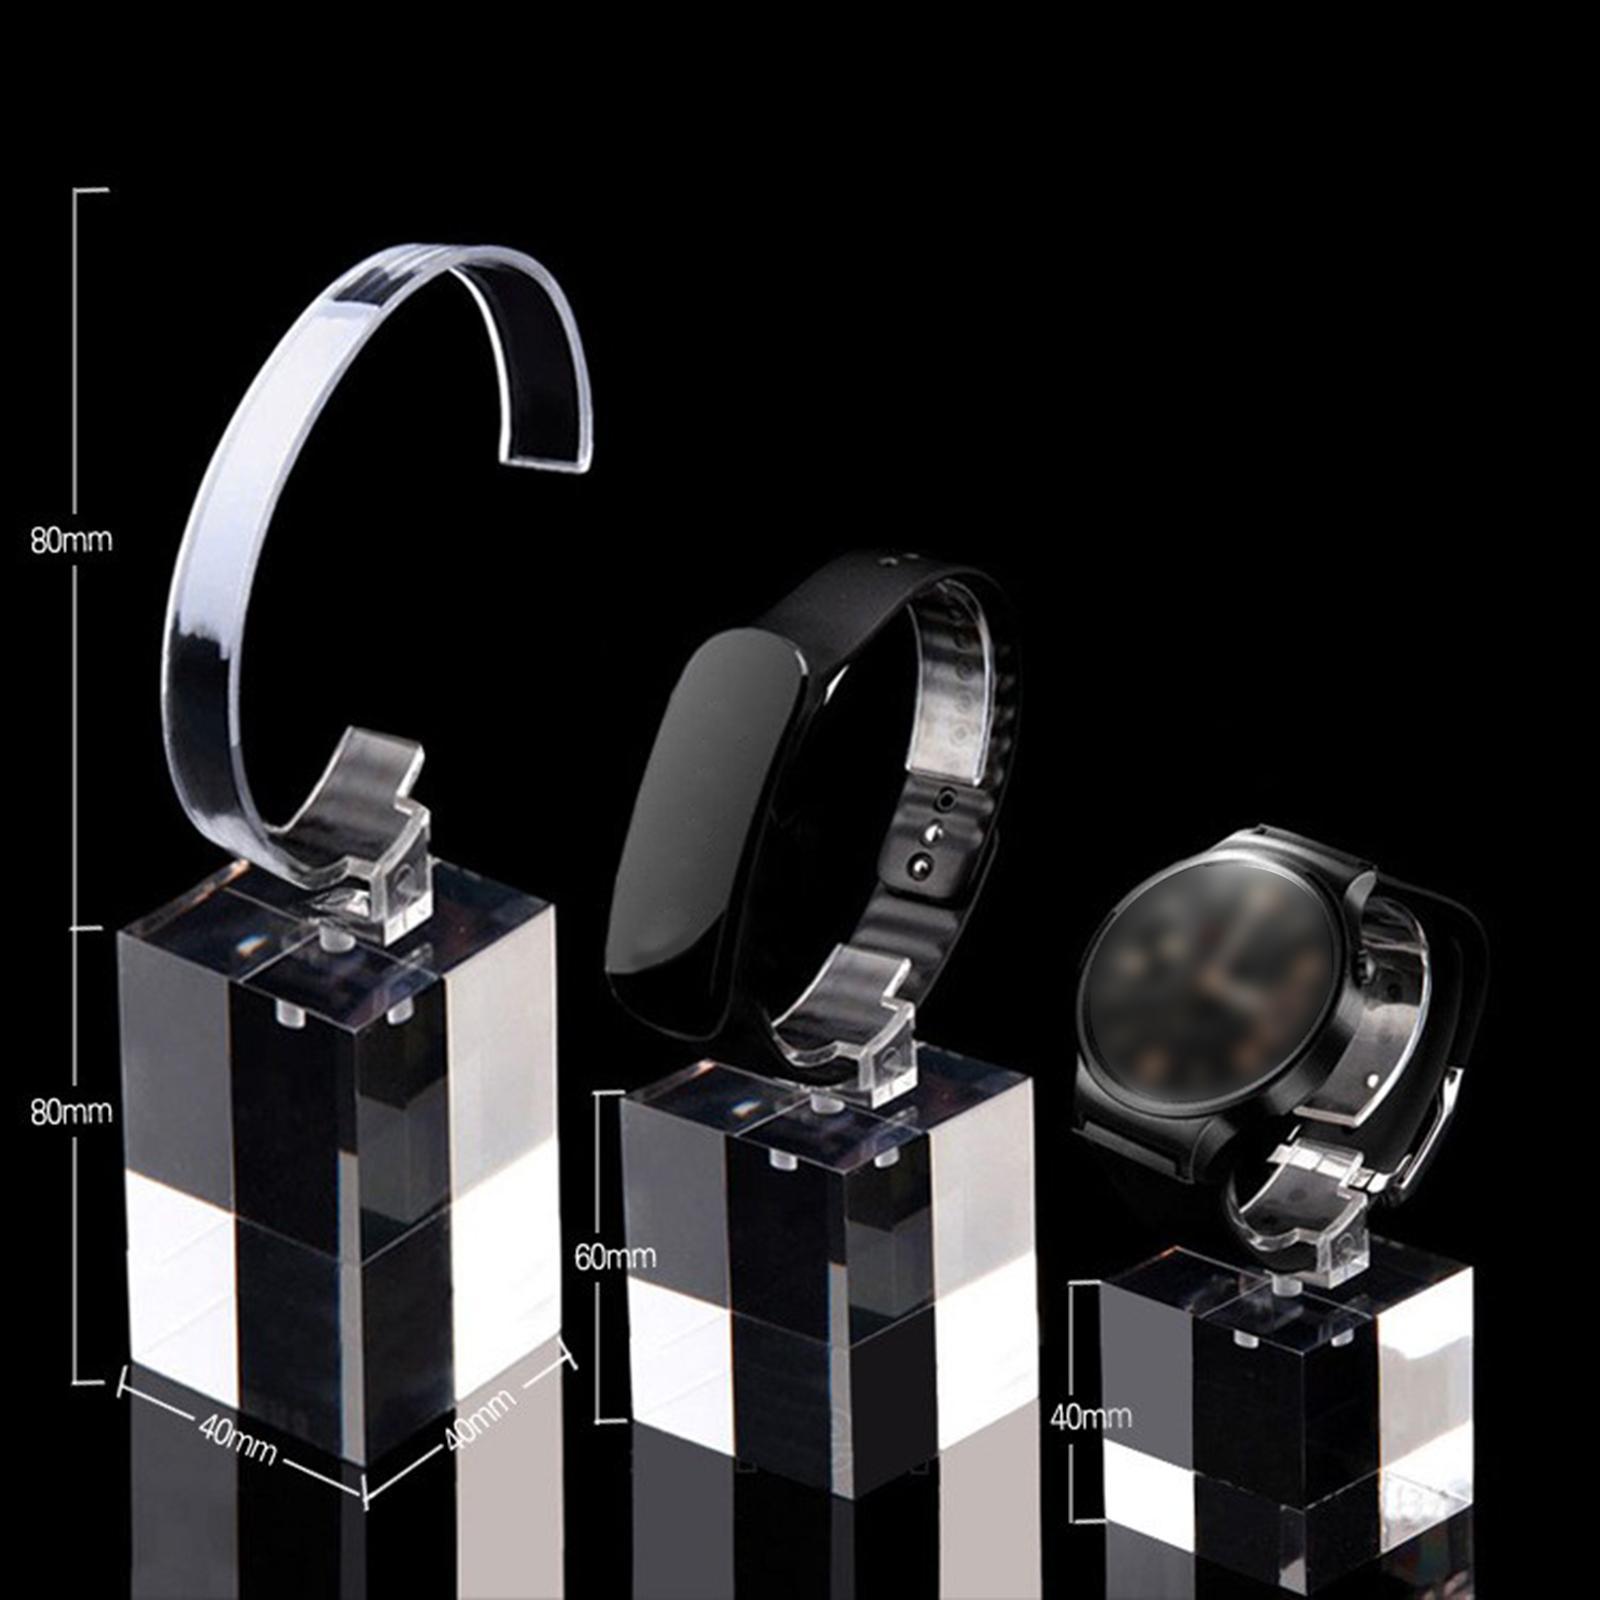 3 Pieces Jewelry Bracelet Watch Display Rack Storage for Retail Dresser Shop